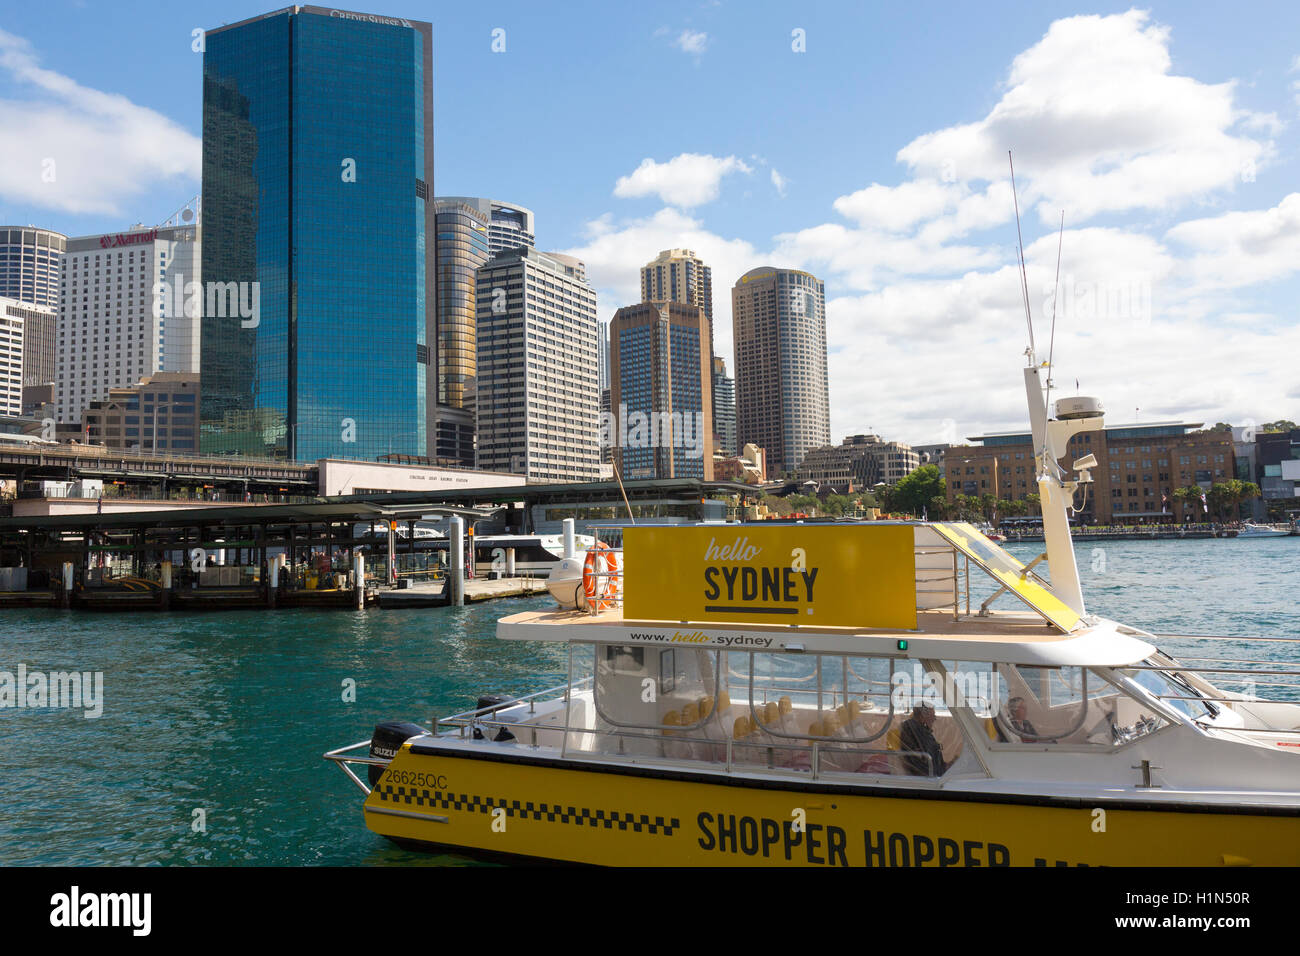 Bateau à trémie Shopper Sydney Circular Quay, le bateau prend des gens à des destinations de magasinage à Sydney, Australie Banque D'Images